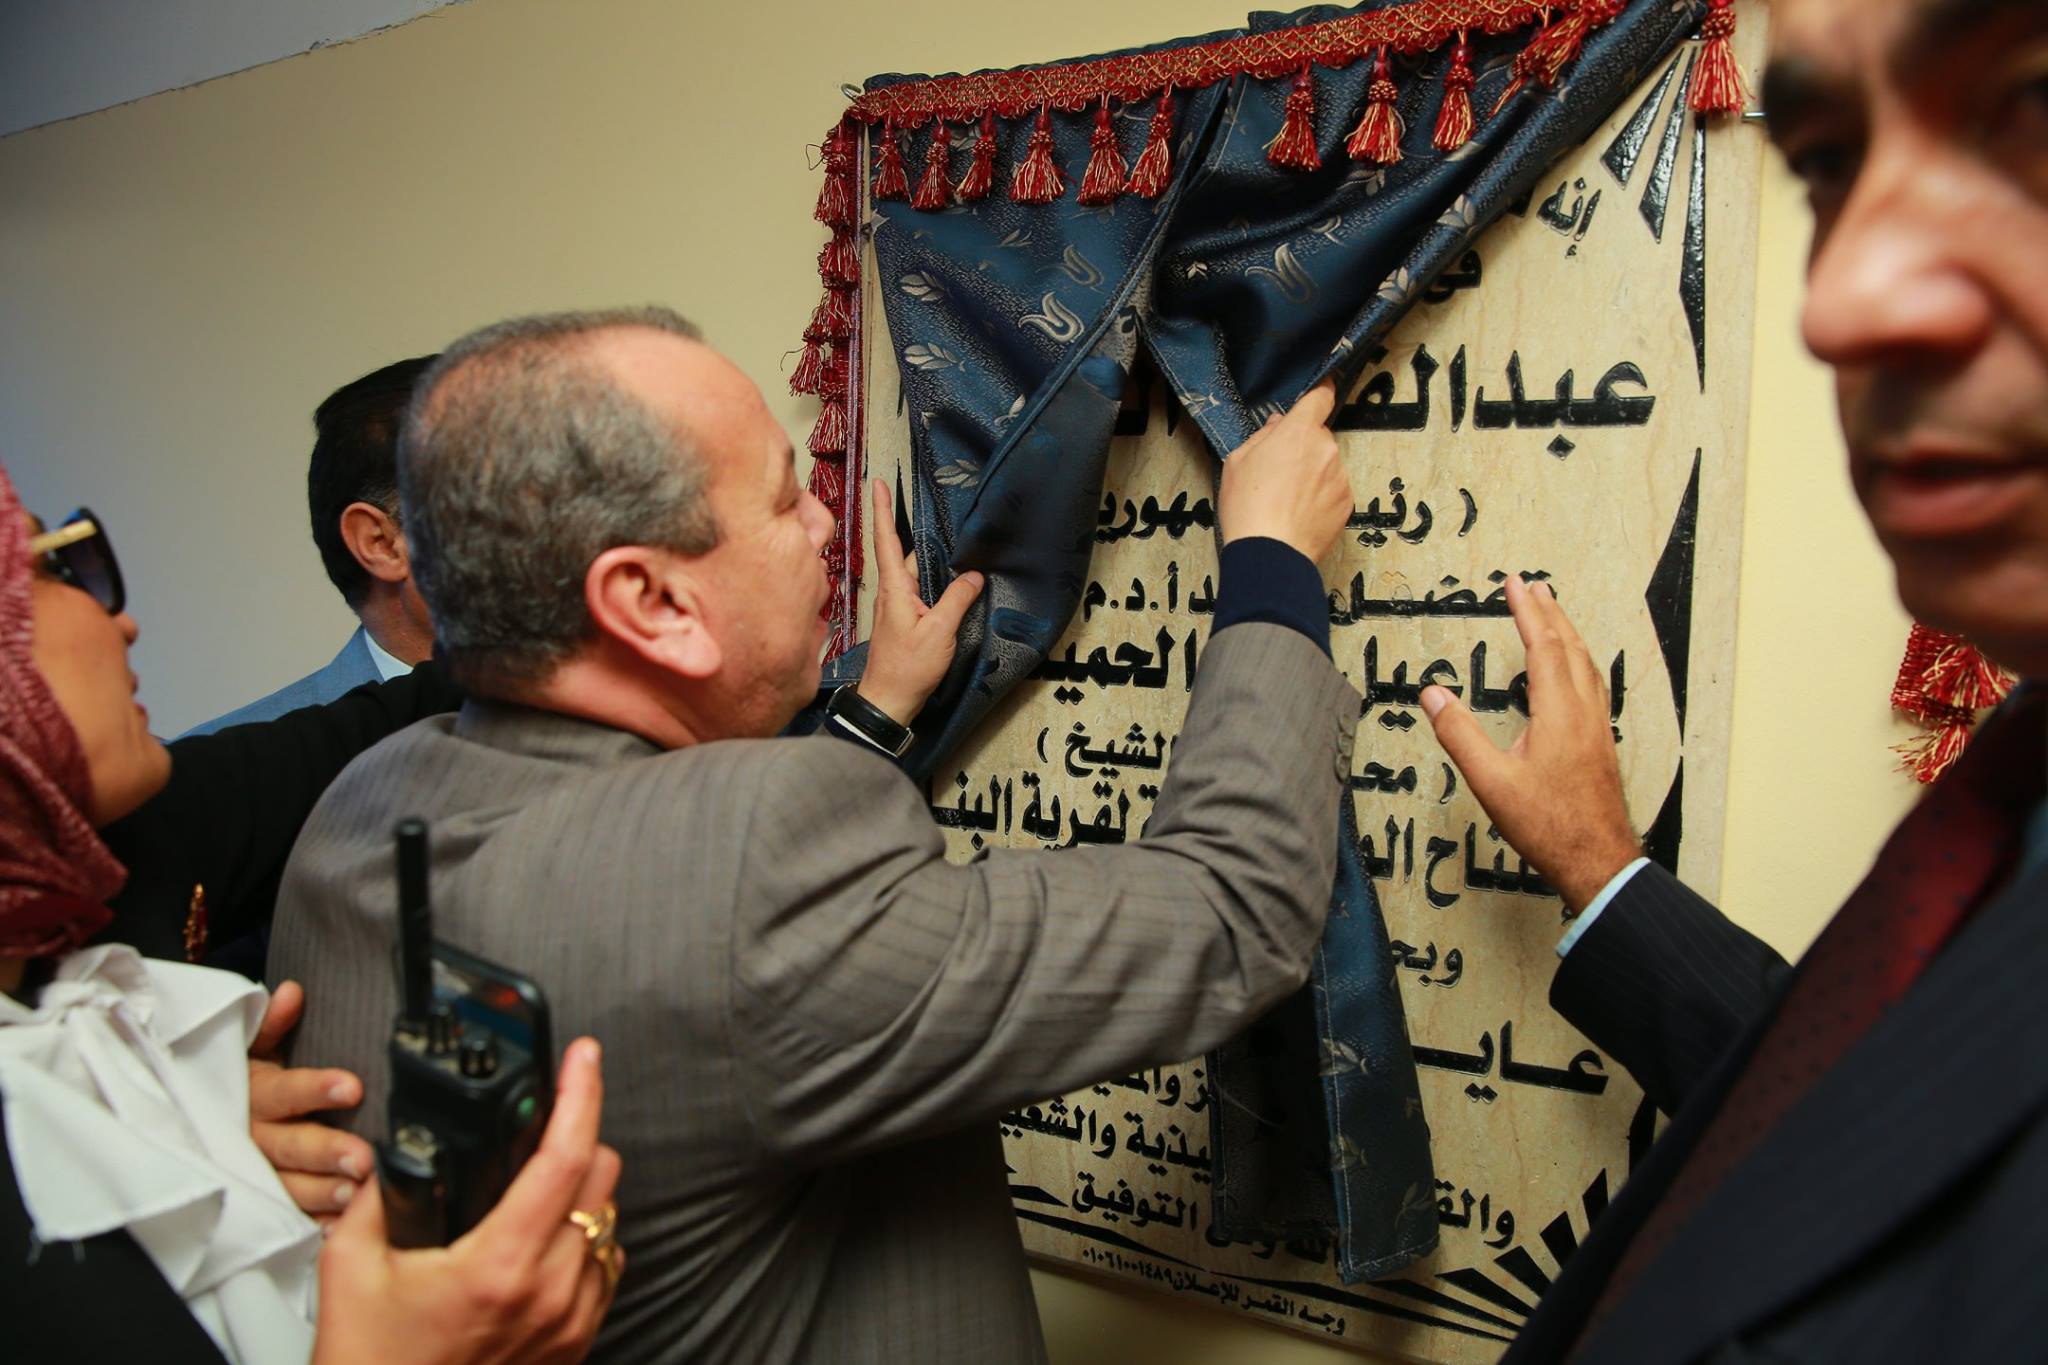   بالصور|| إفتتاح مقر الوحدة المحلية بالبنا فى كفر الشيخ  بـ1.5 جنيه